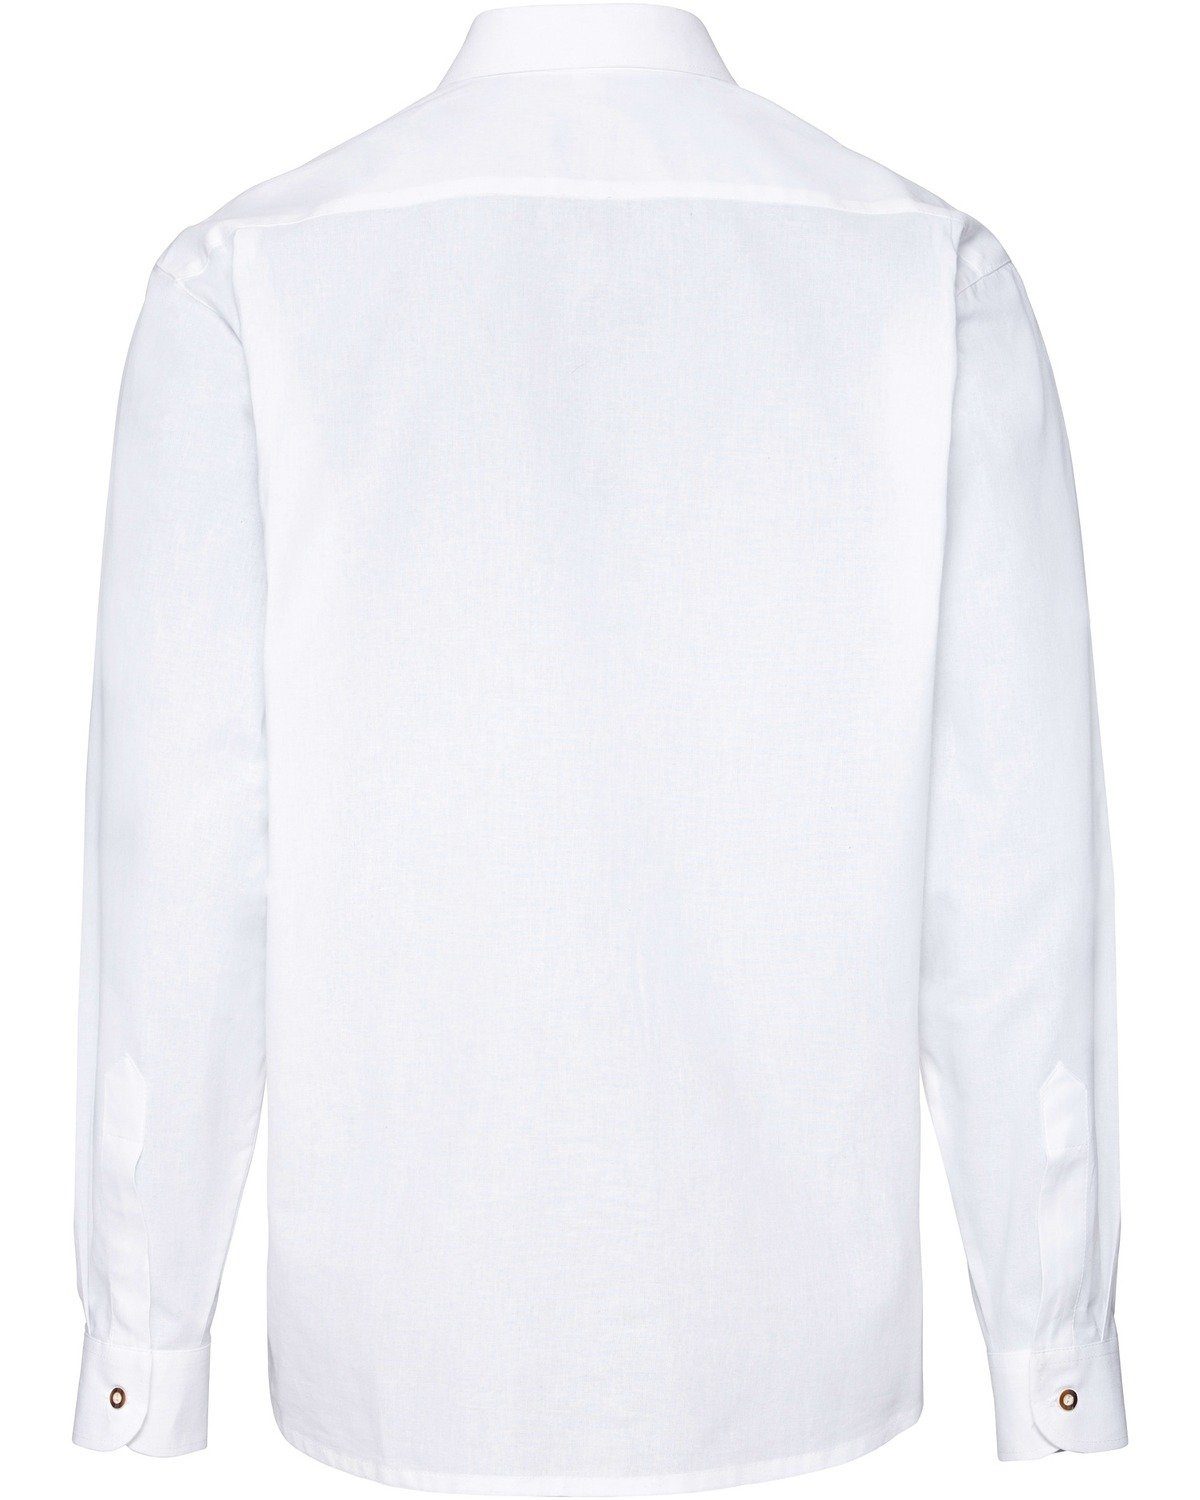 Trachtenhemd Weiß mit Applikationen Luis Trachtenhemd Steindl